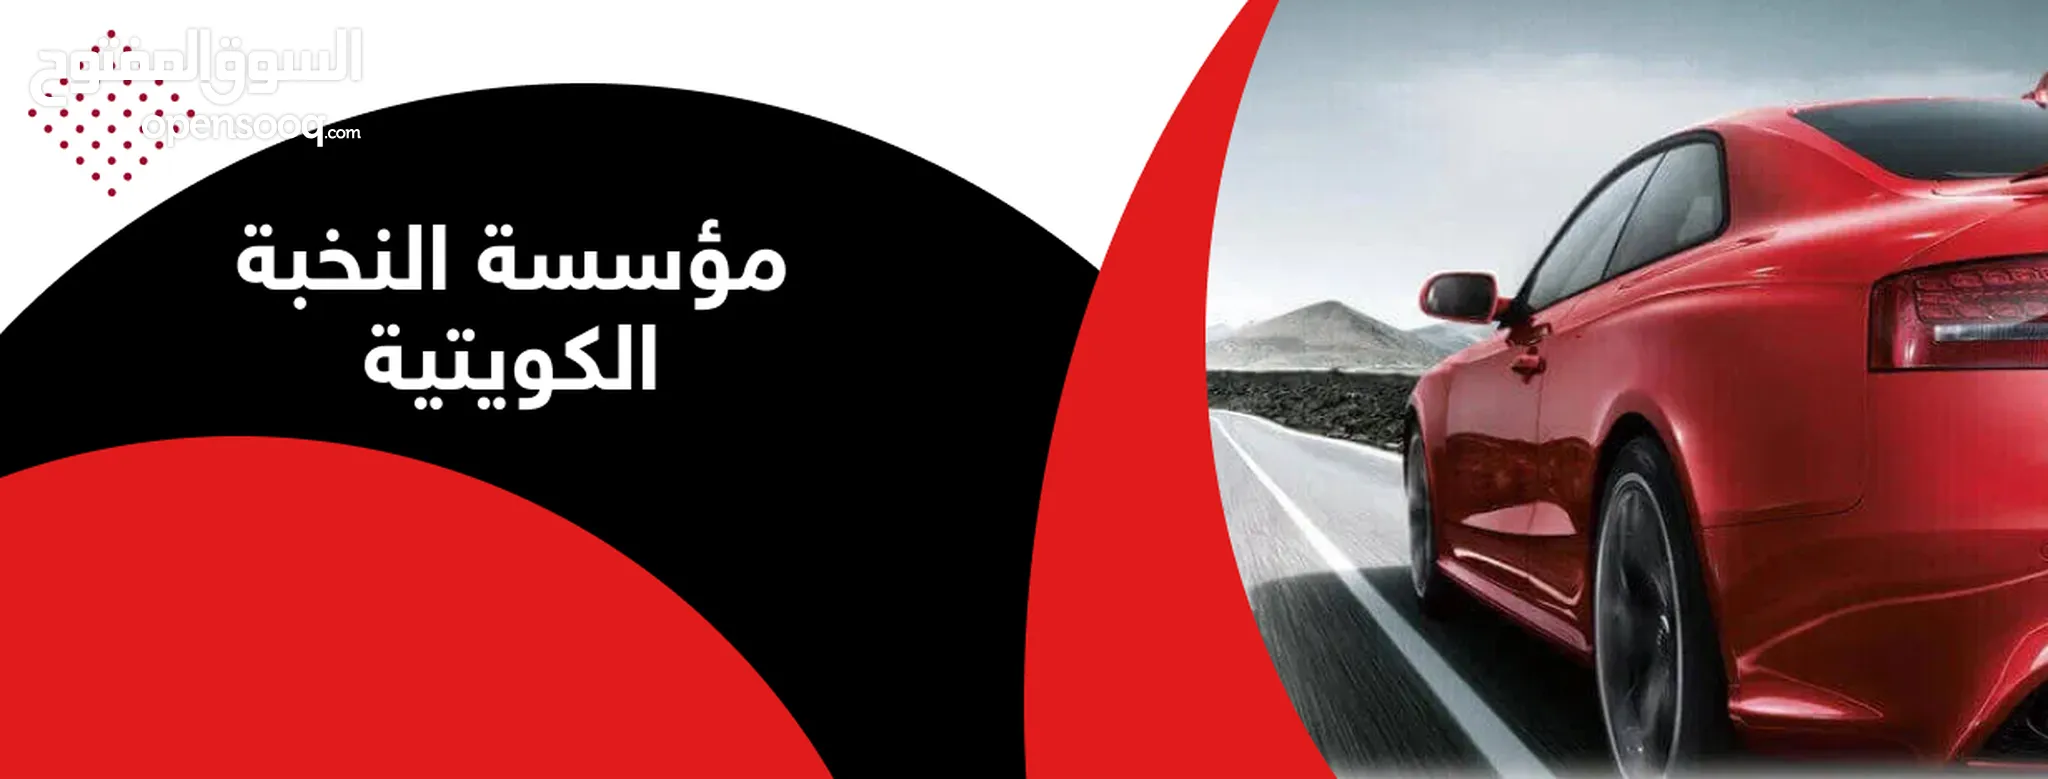 شركة النخبة الكويتية للسيارات